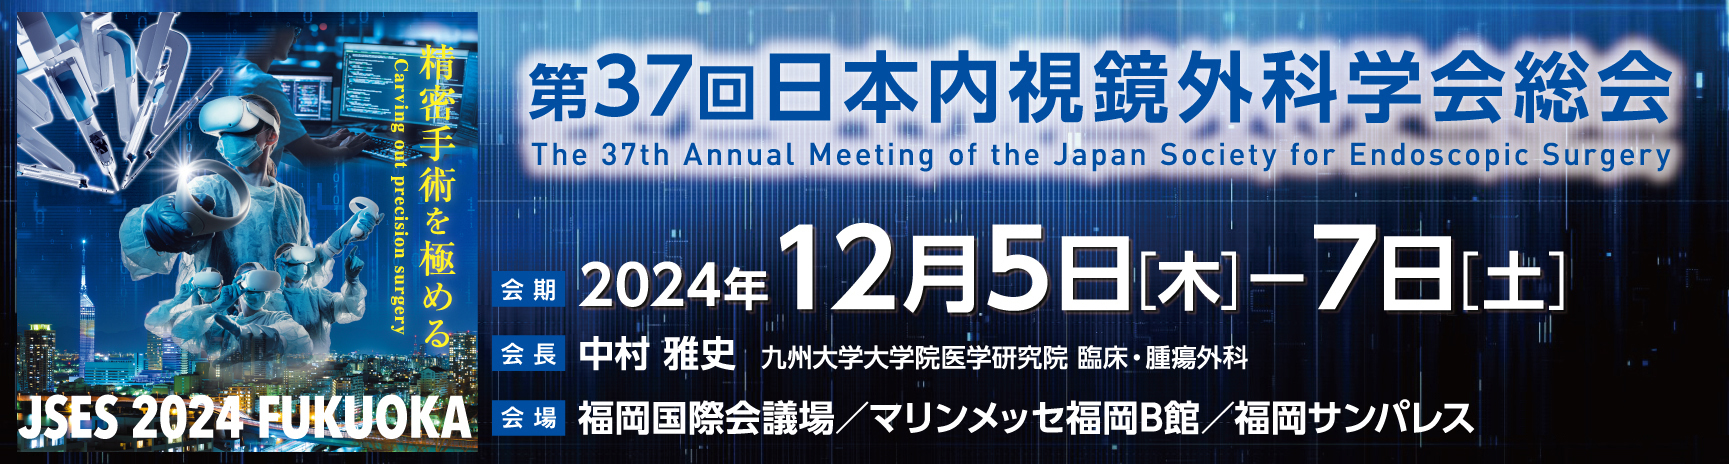 第37回日本内視鏡外科学会総会